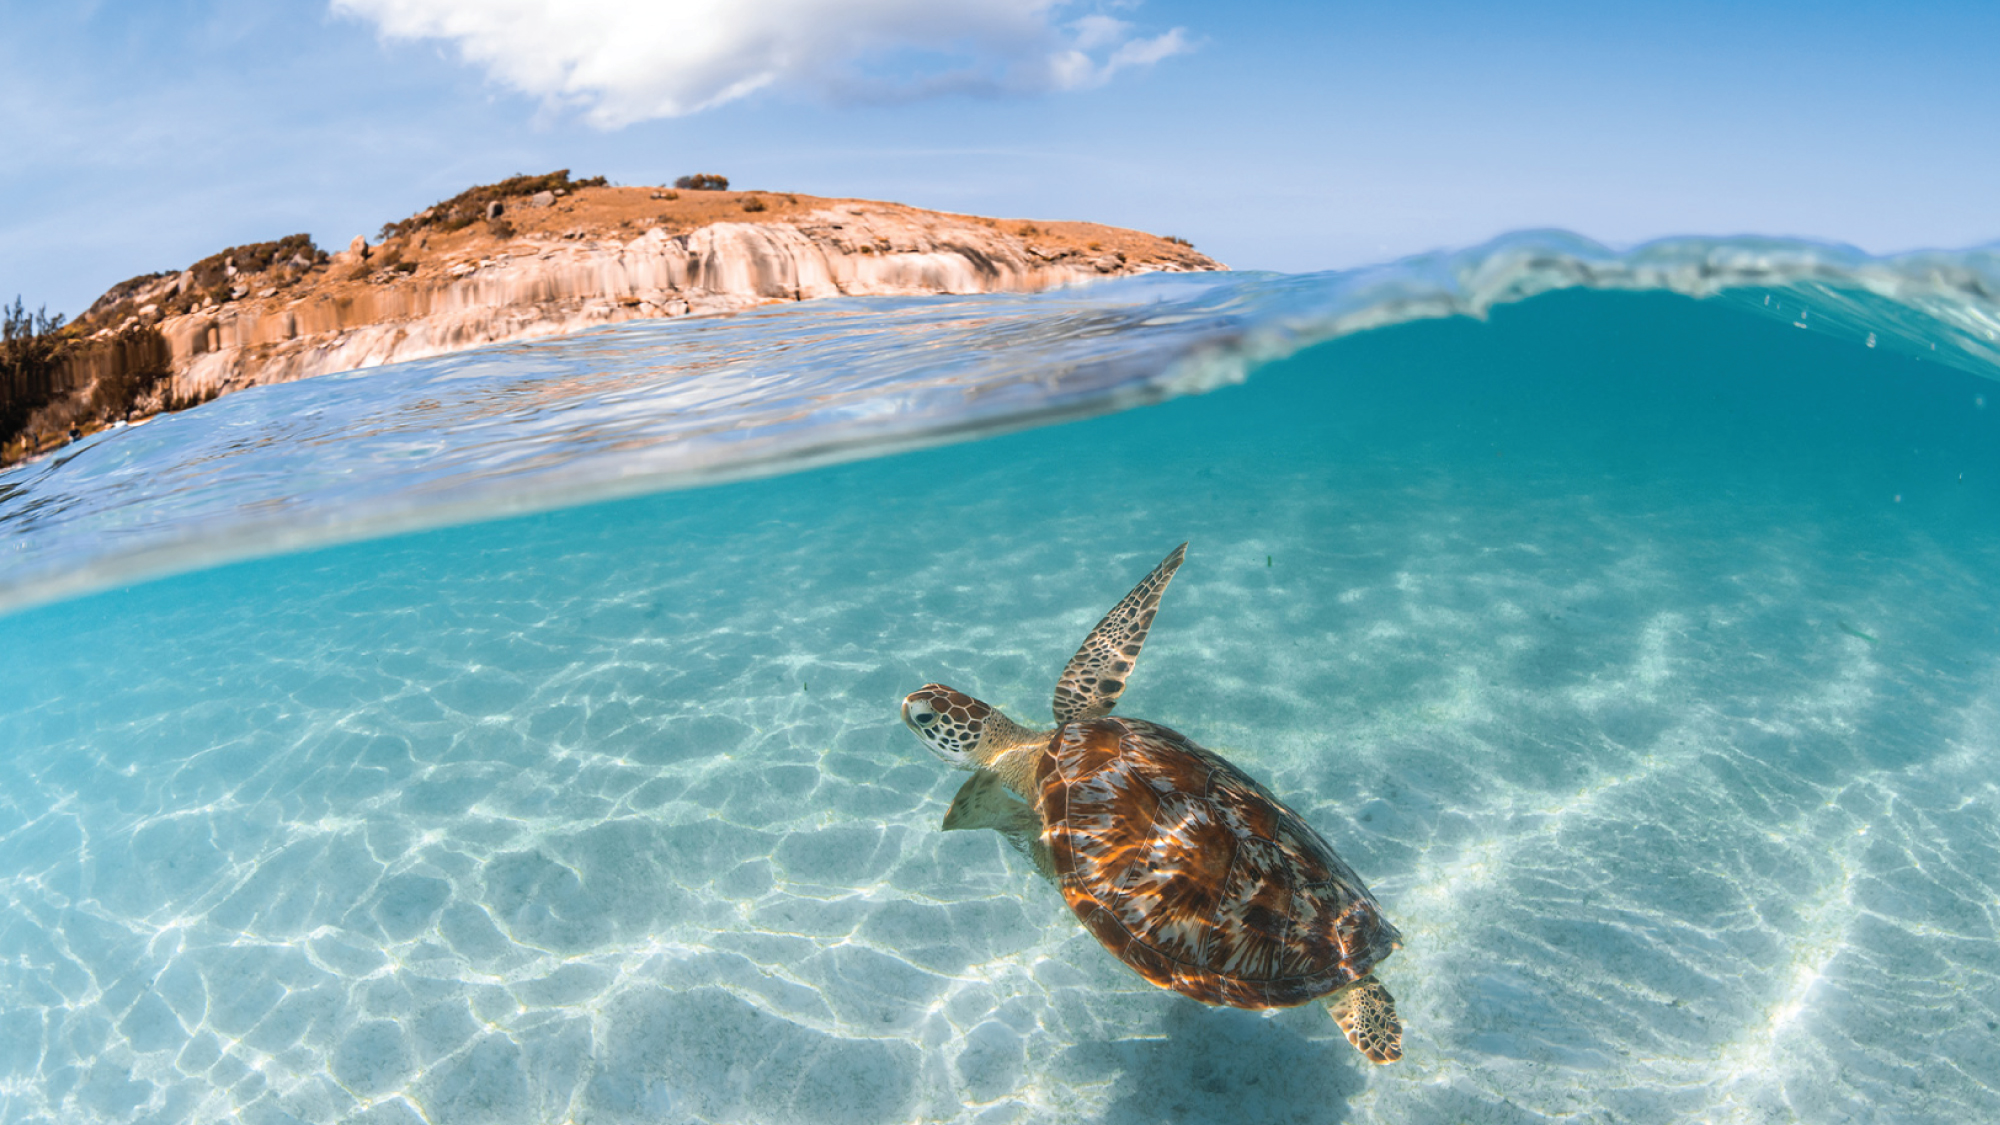 Sea Turtle swimming near the shore in Lizard Island, Australia